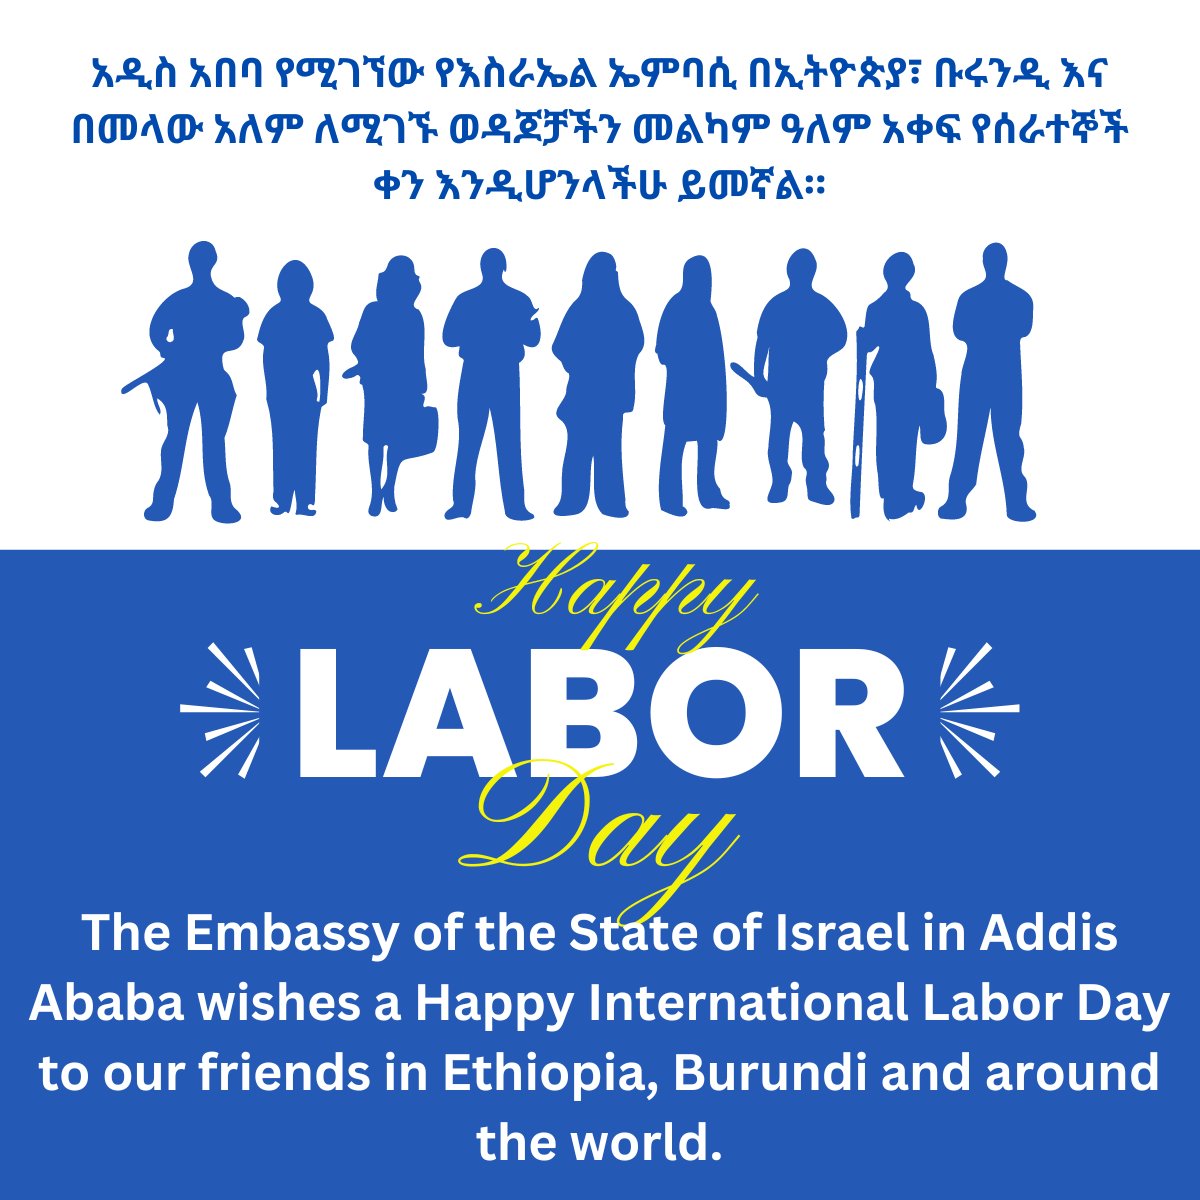 መልካም ዓለም አቀፍ የሰራተኛ ቀን ይሁንልን፡፡ Happy International Labor Day.